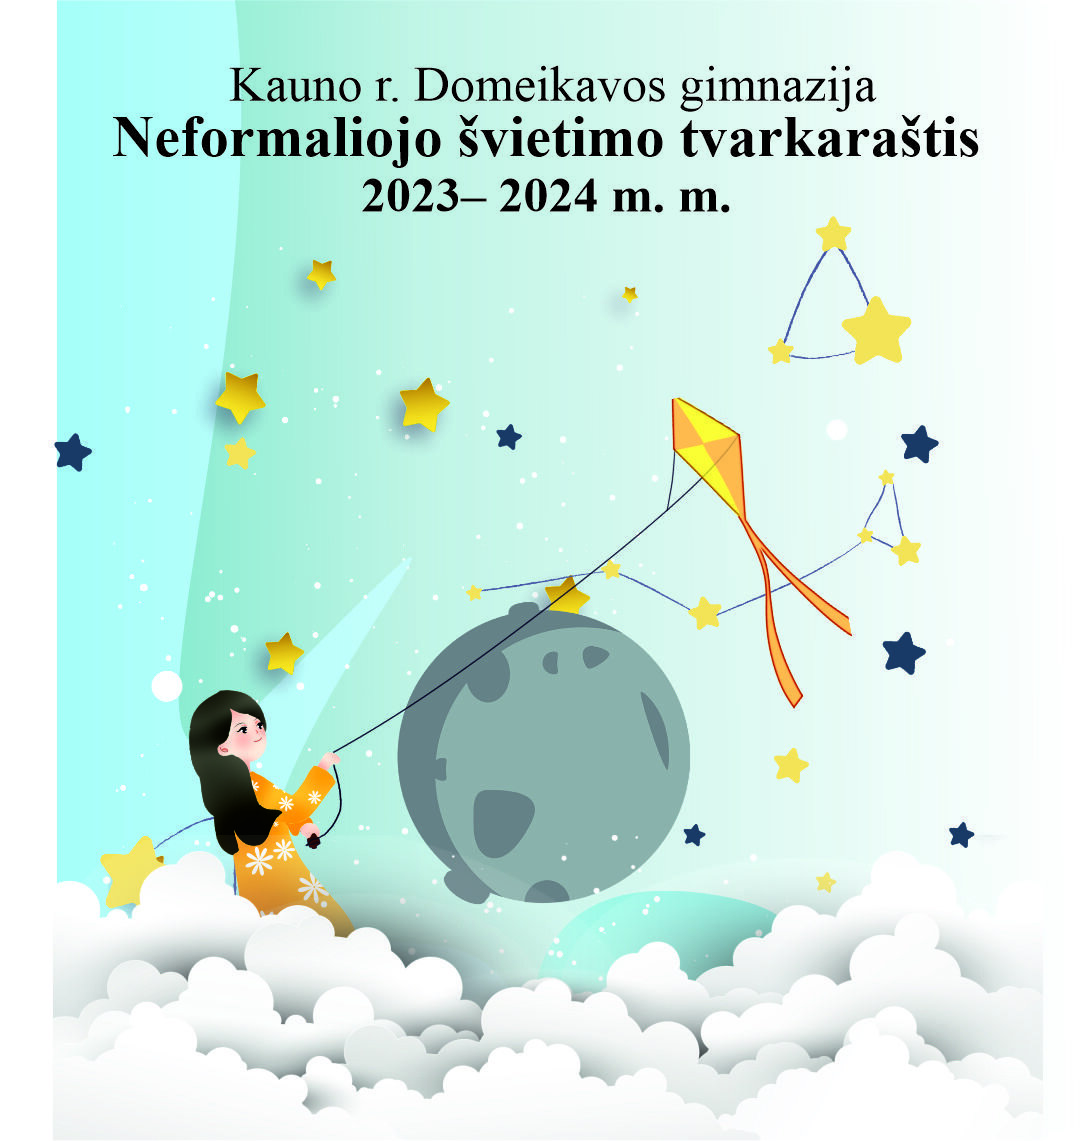 Atnaujintas neformaliojo švietimo tvarkaraštis 2022-2023 m.m.